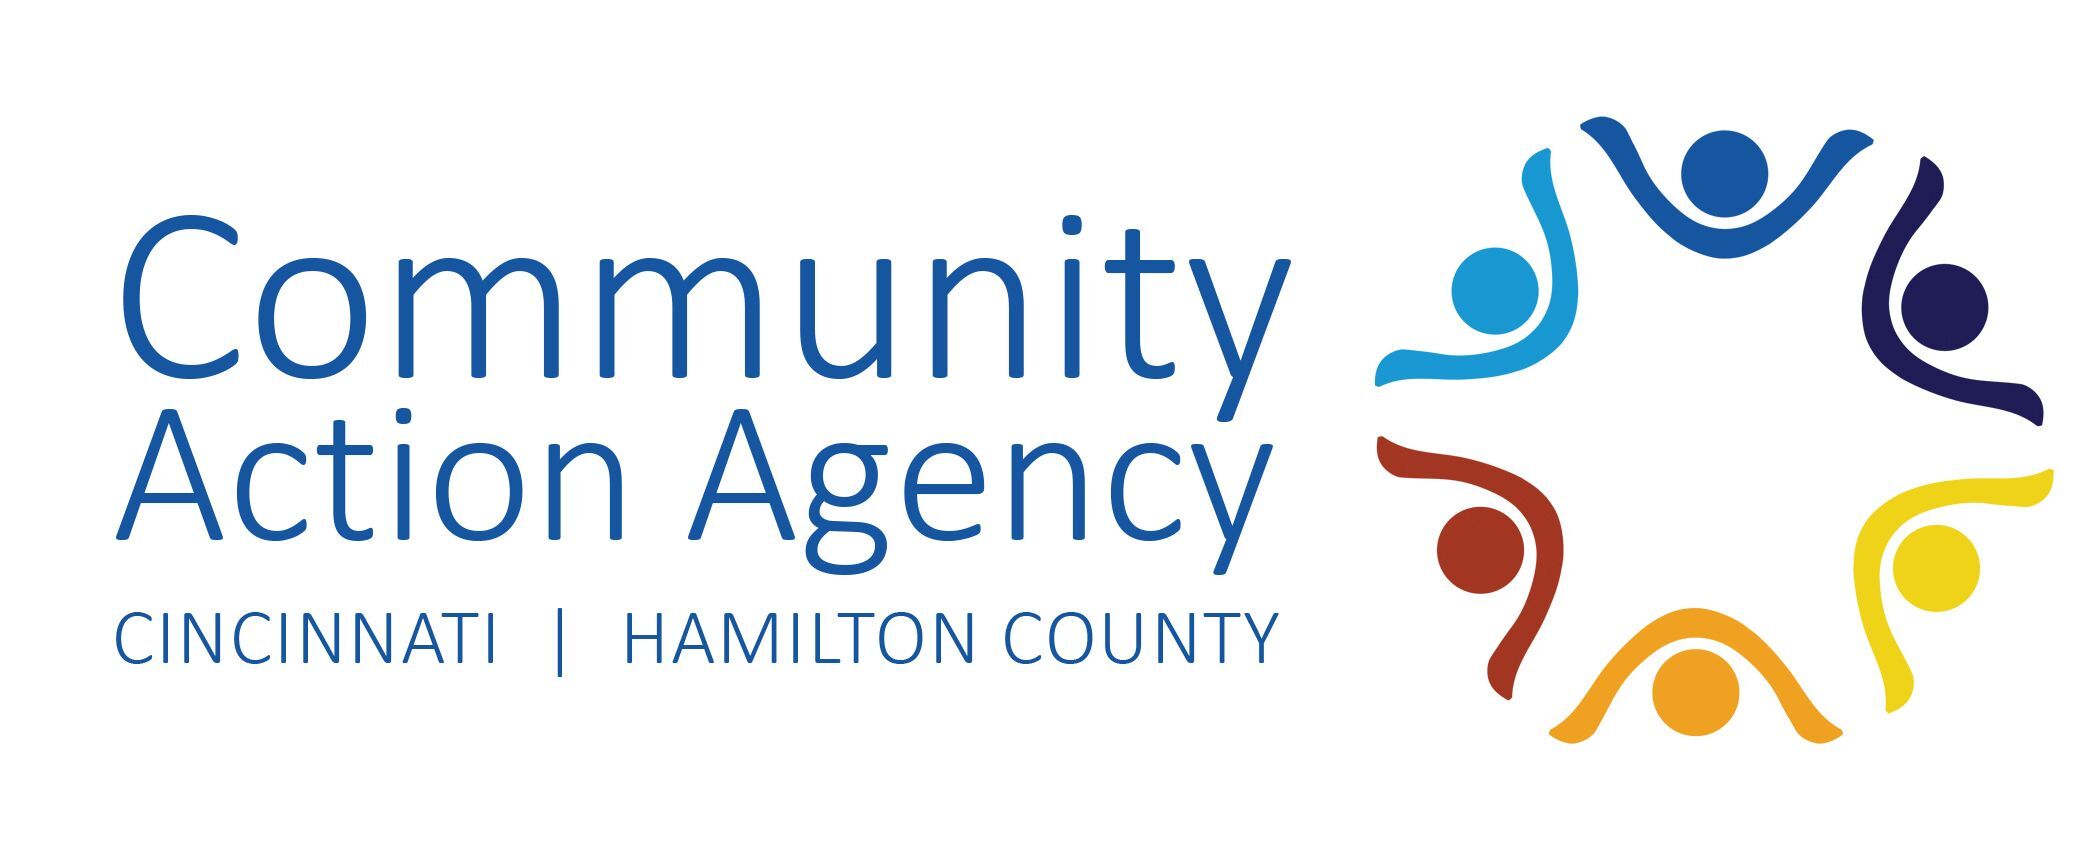 Community Action Agency Cincinnati Hamilton County